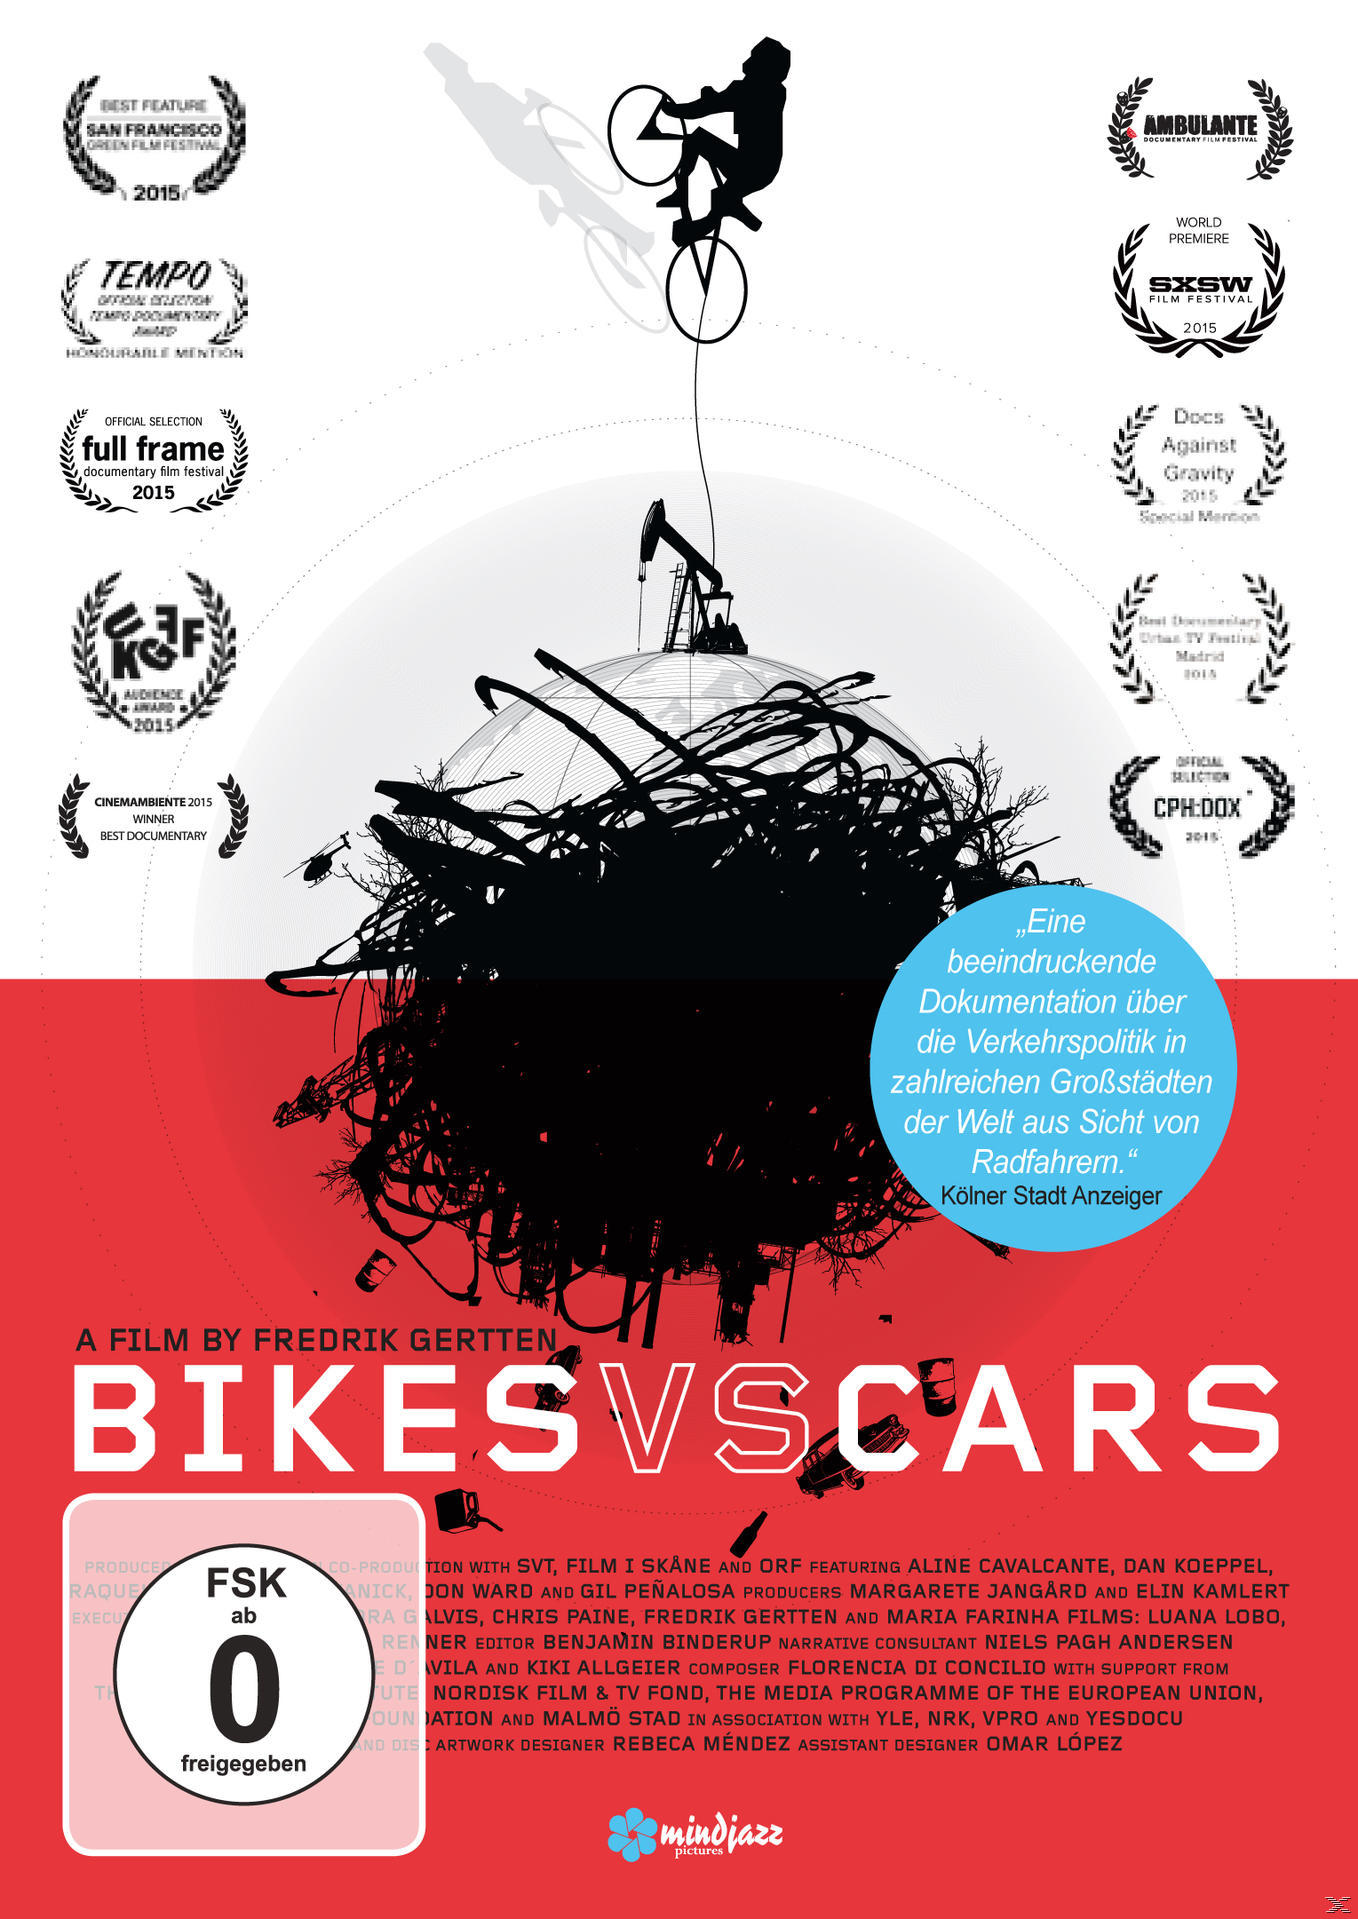 Bikes DVD Cars vs